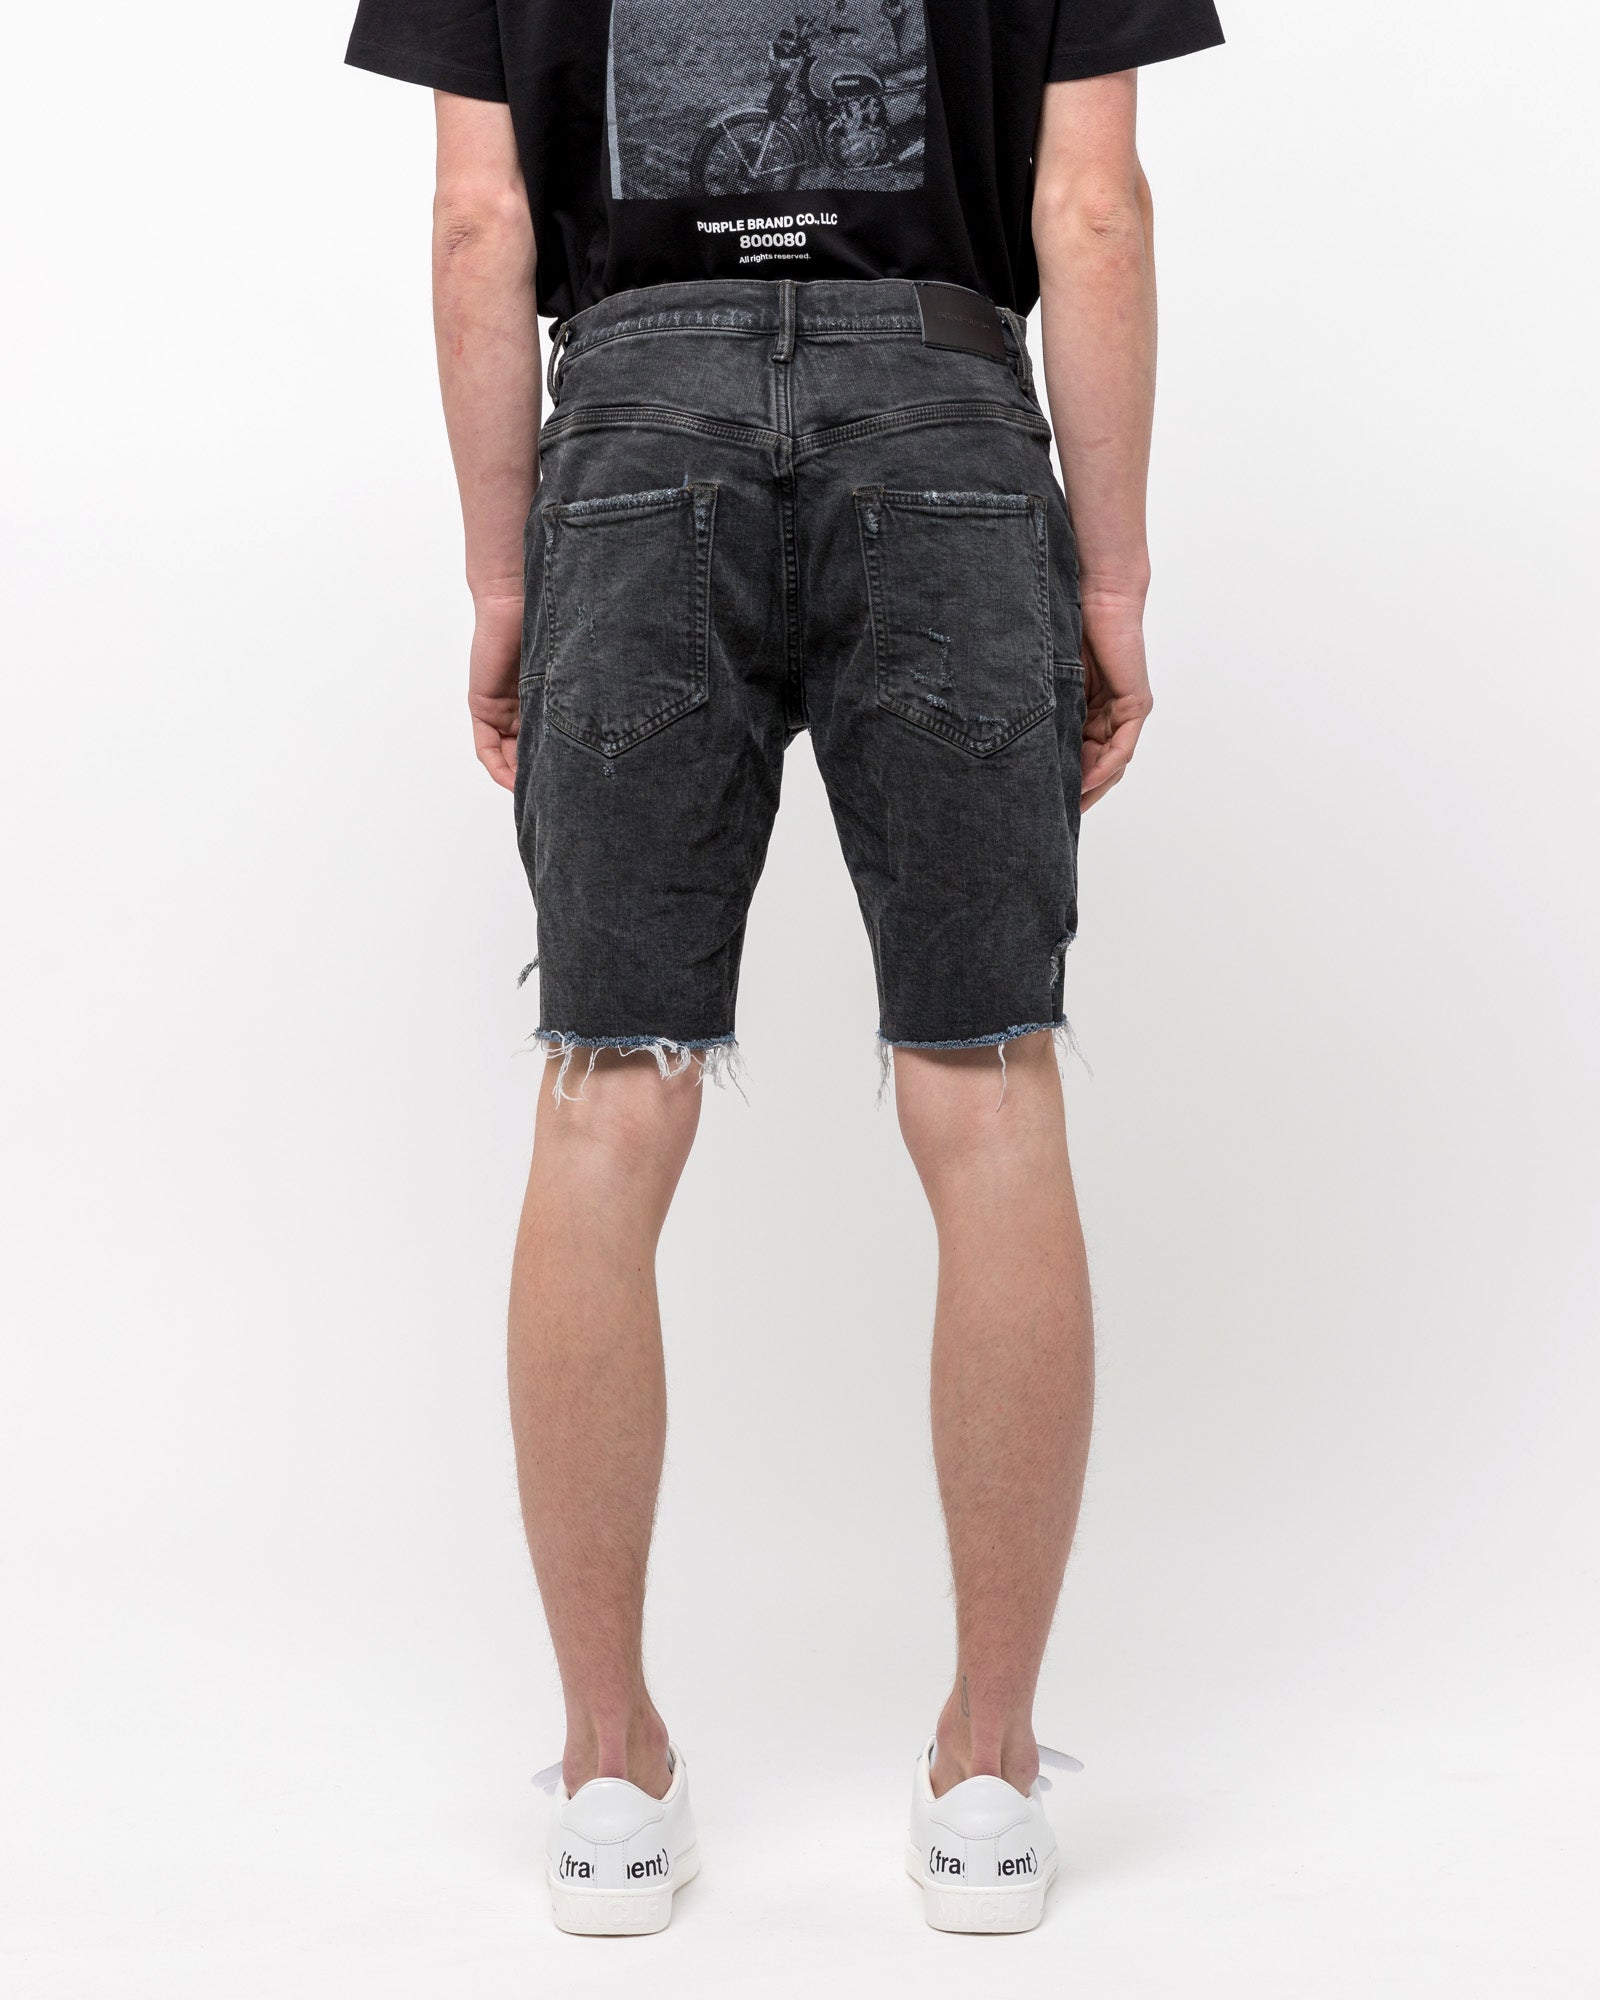 020 Denim Shorts in Vintage Coated Black